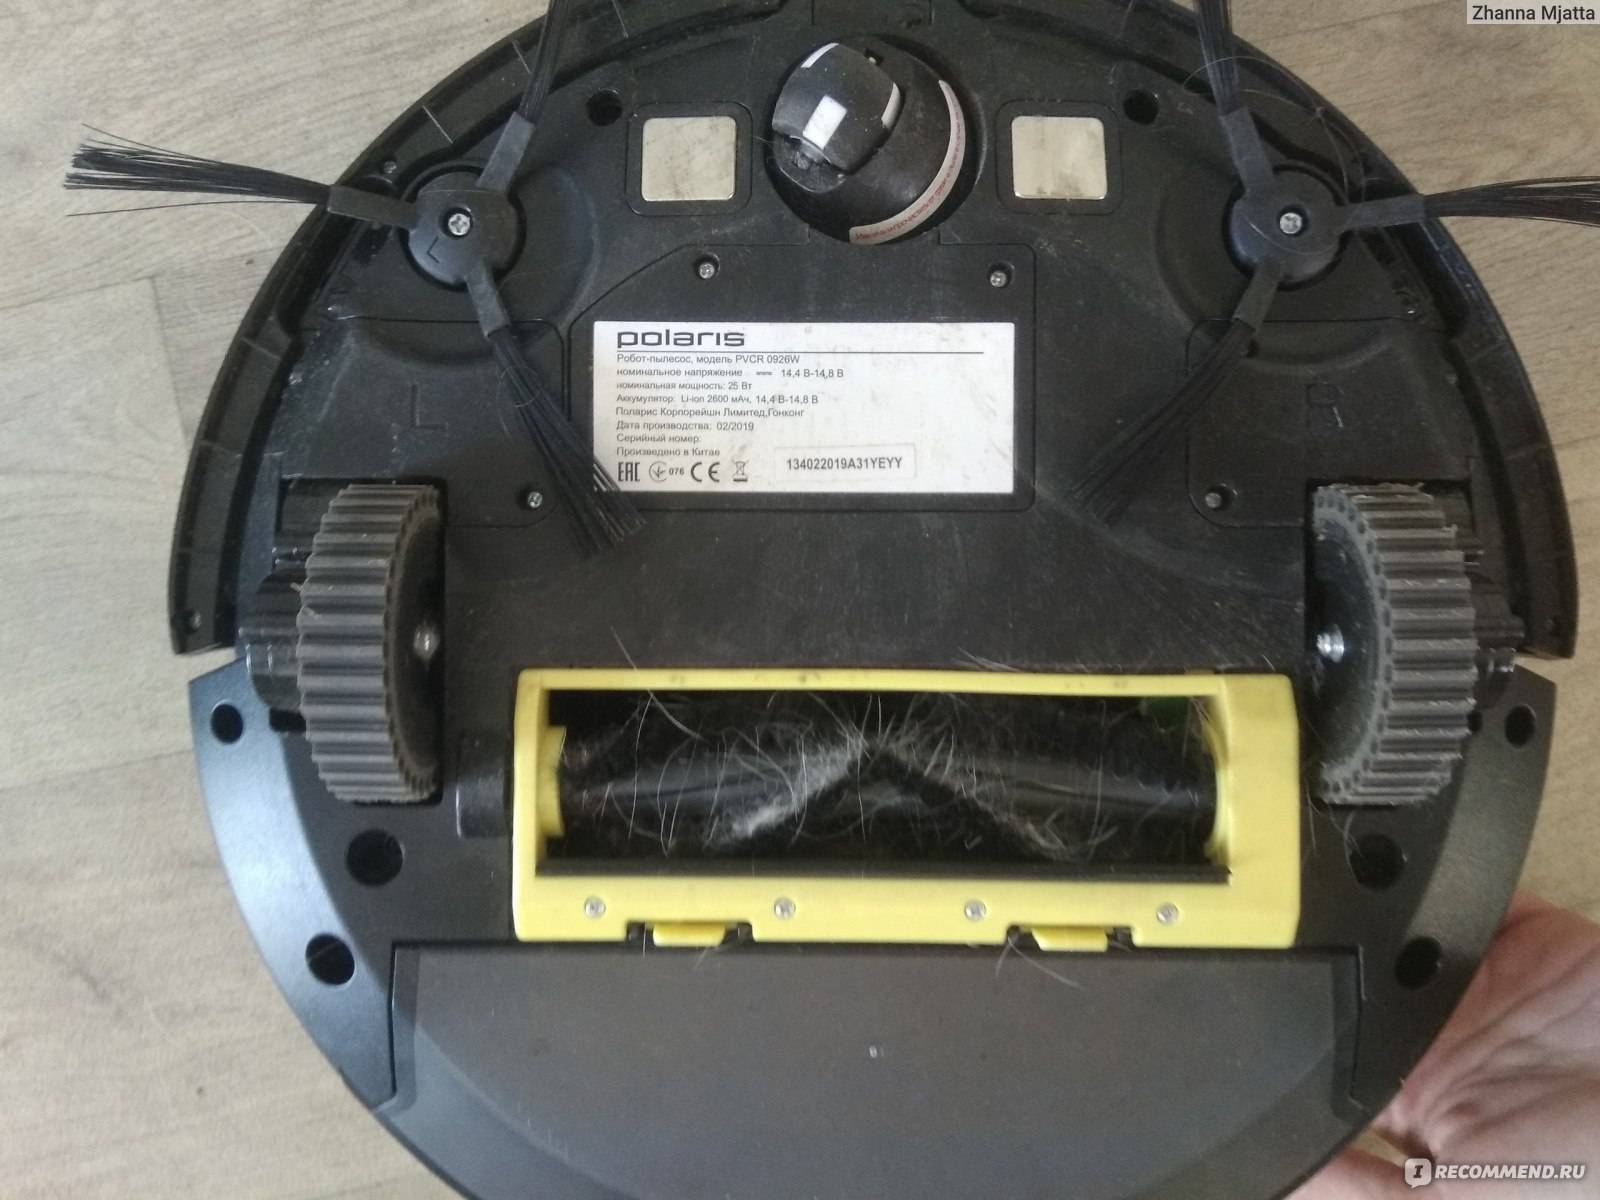 Ремонт роботов пылесосов – 11 способов починить самостоятельно